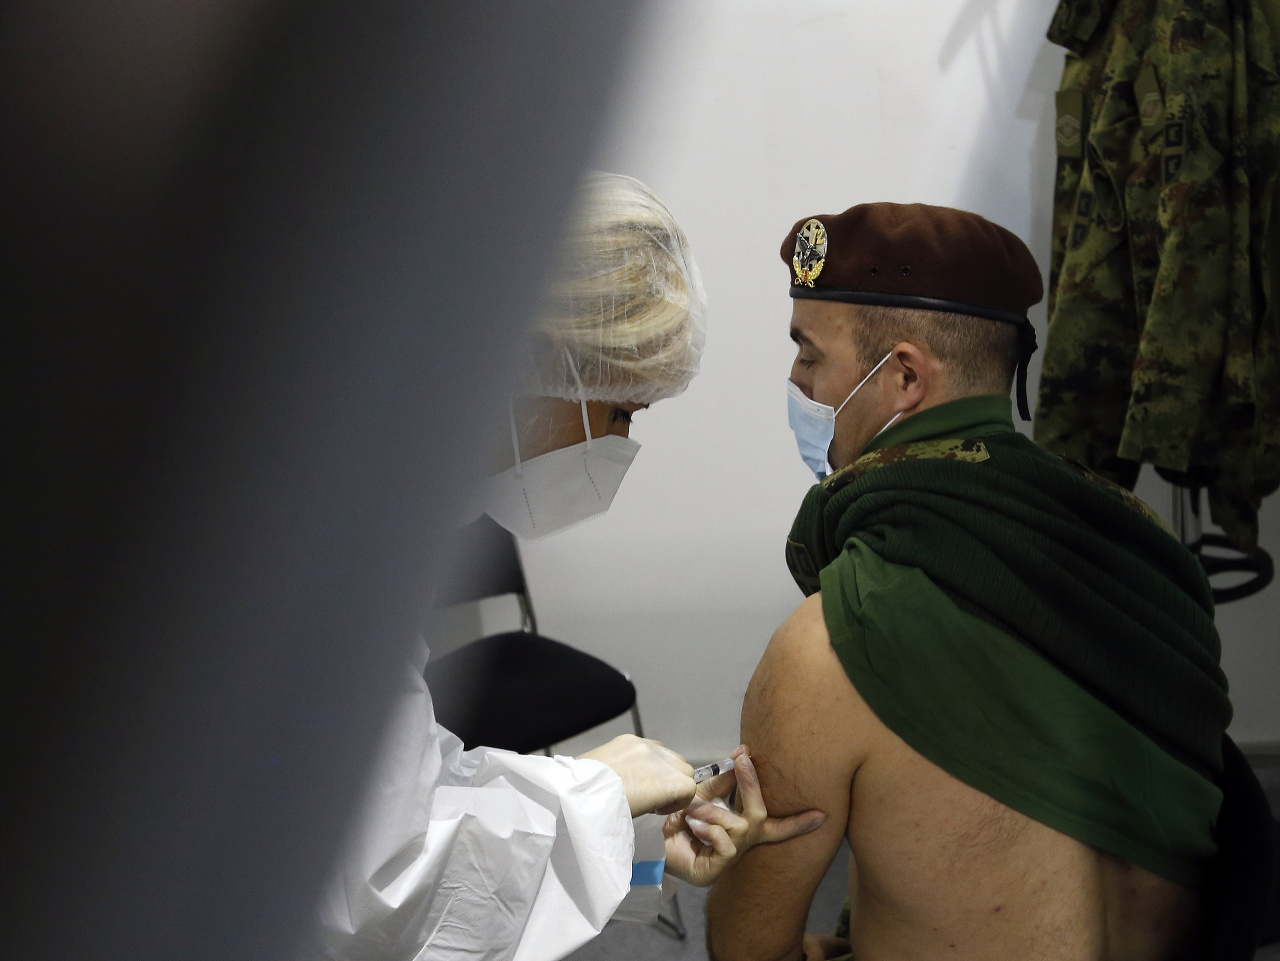 Vojak dostáva vakcínu proti ochoreniu COVID-19 od čínskej spoločnosti Sinopharm v Belehrade